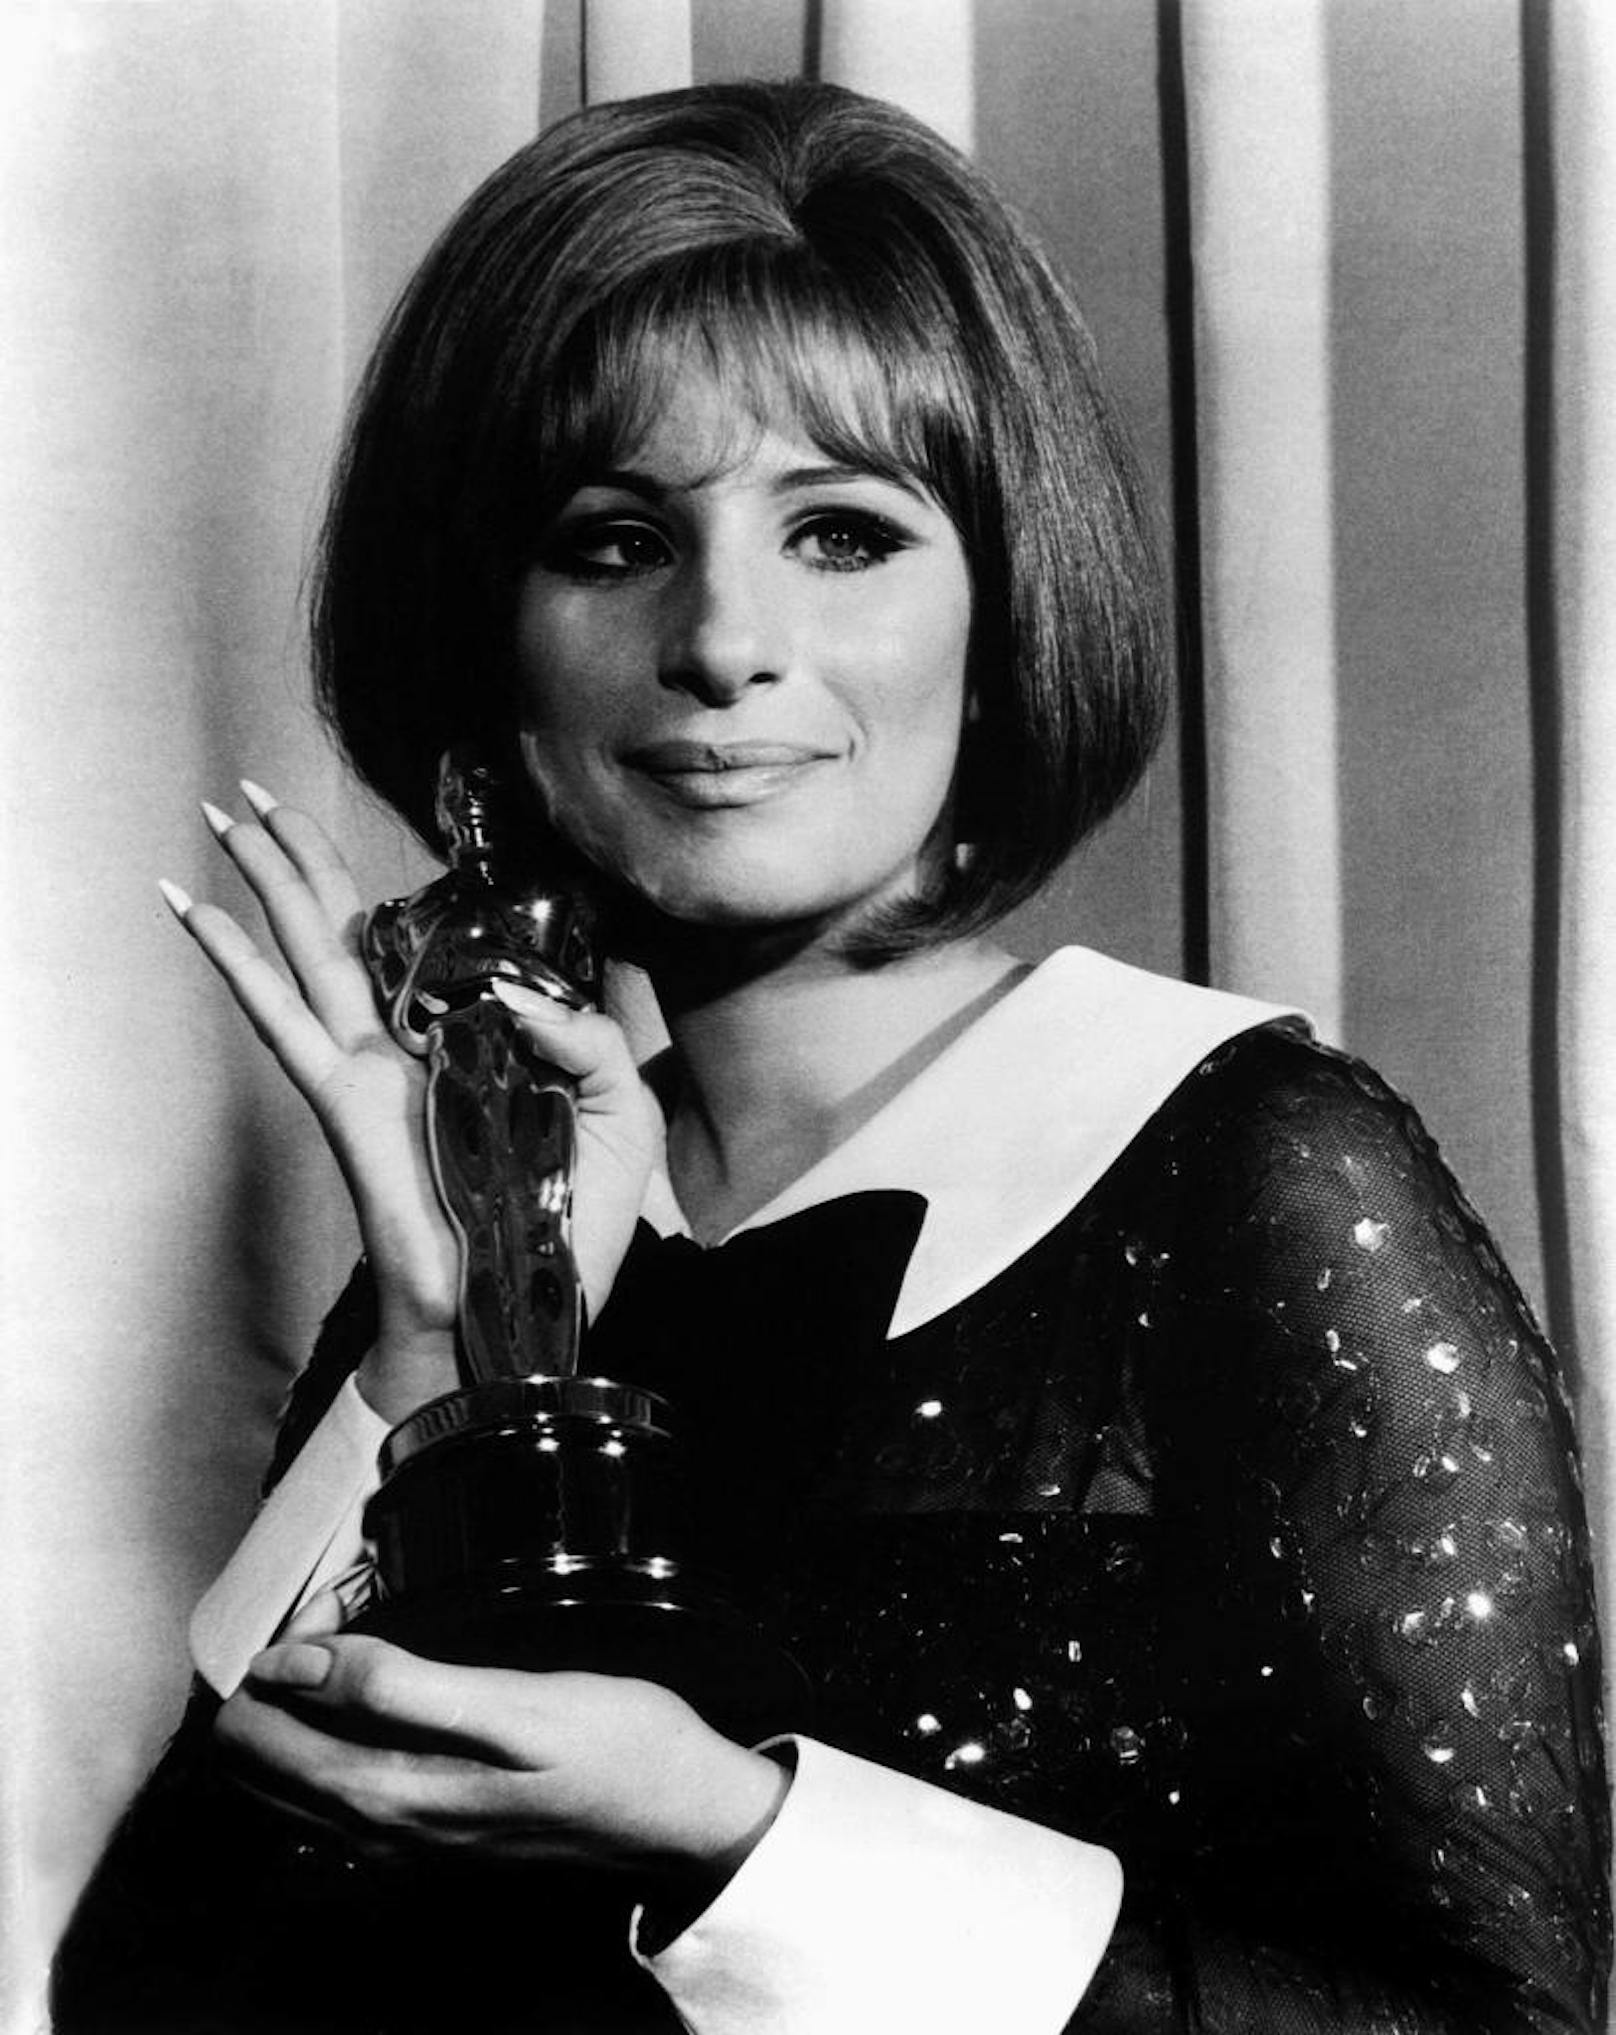 Barbra Streisand bekommt den Oscar für die beste Hauptrolle in "Funny Girl" im Jahr 1969